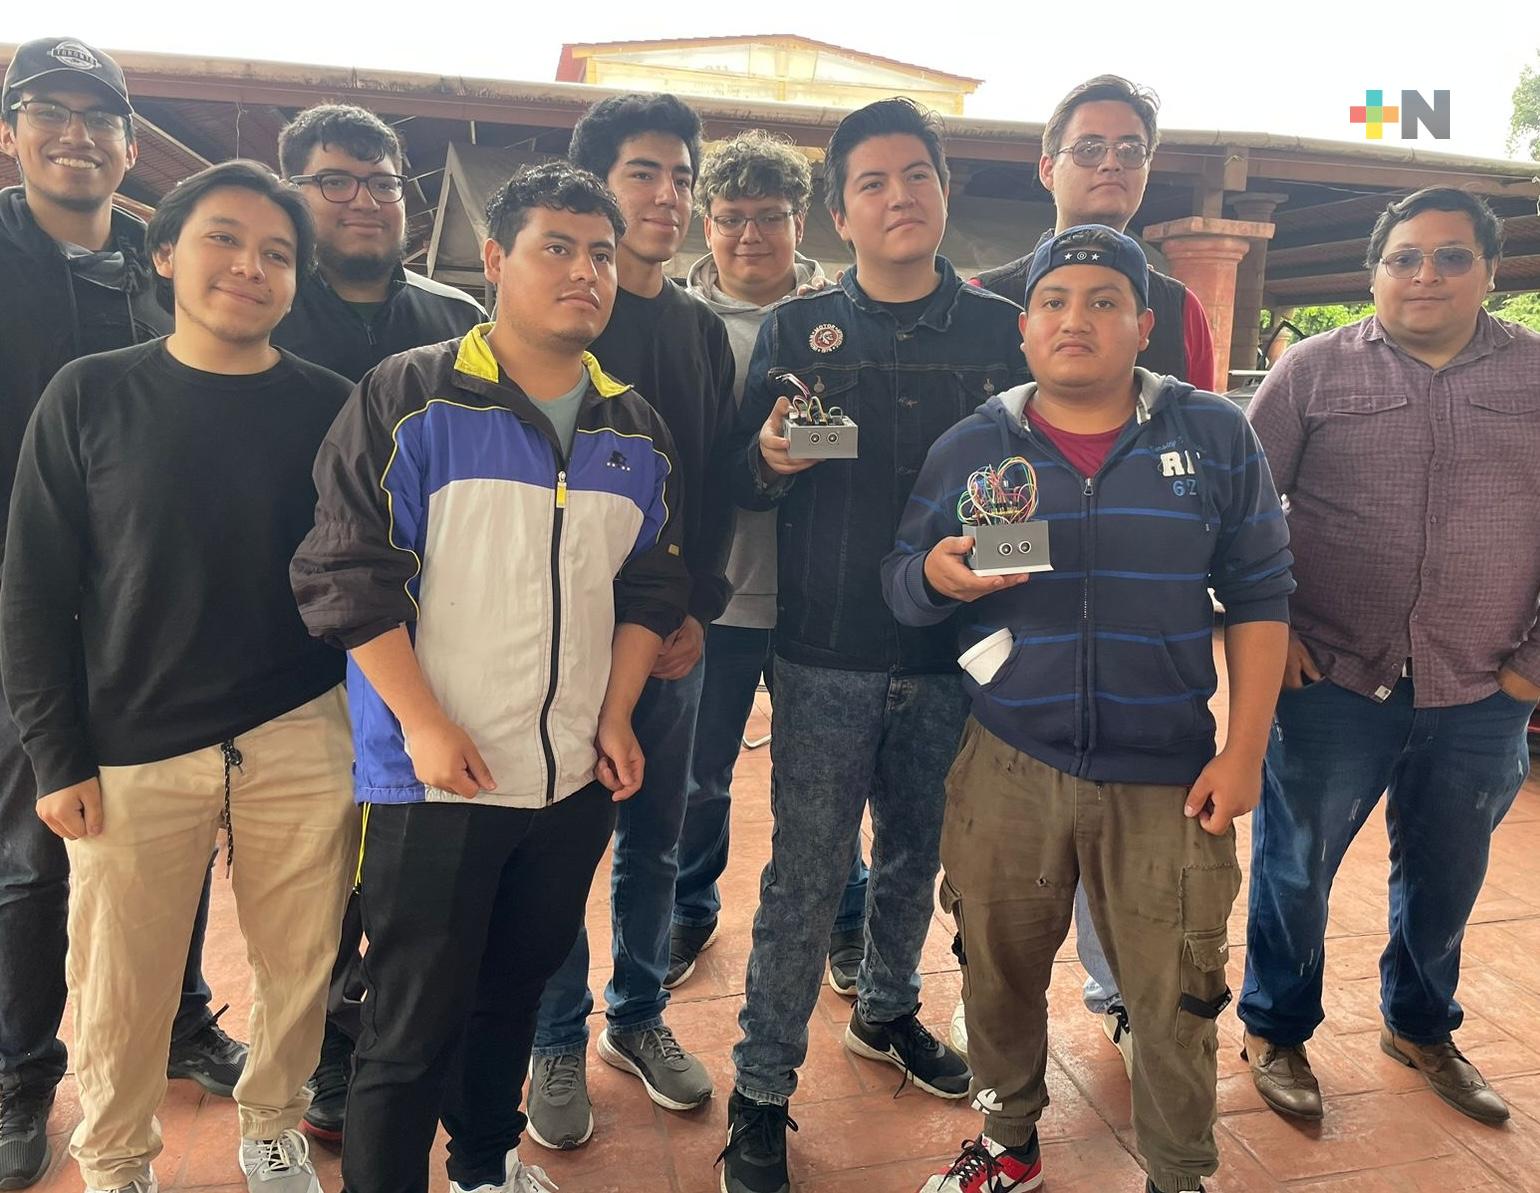 Estudiantes del Tec de Xalapa se alistan para competir en el Nacional de Robótica